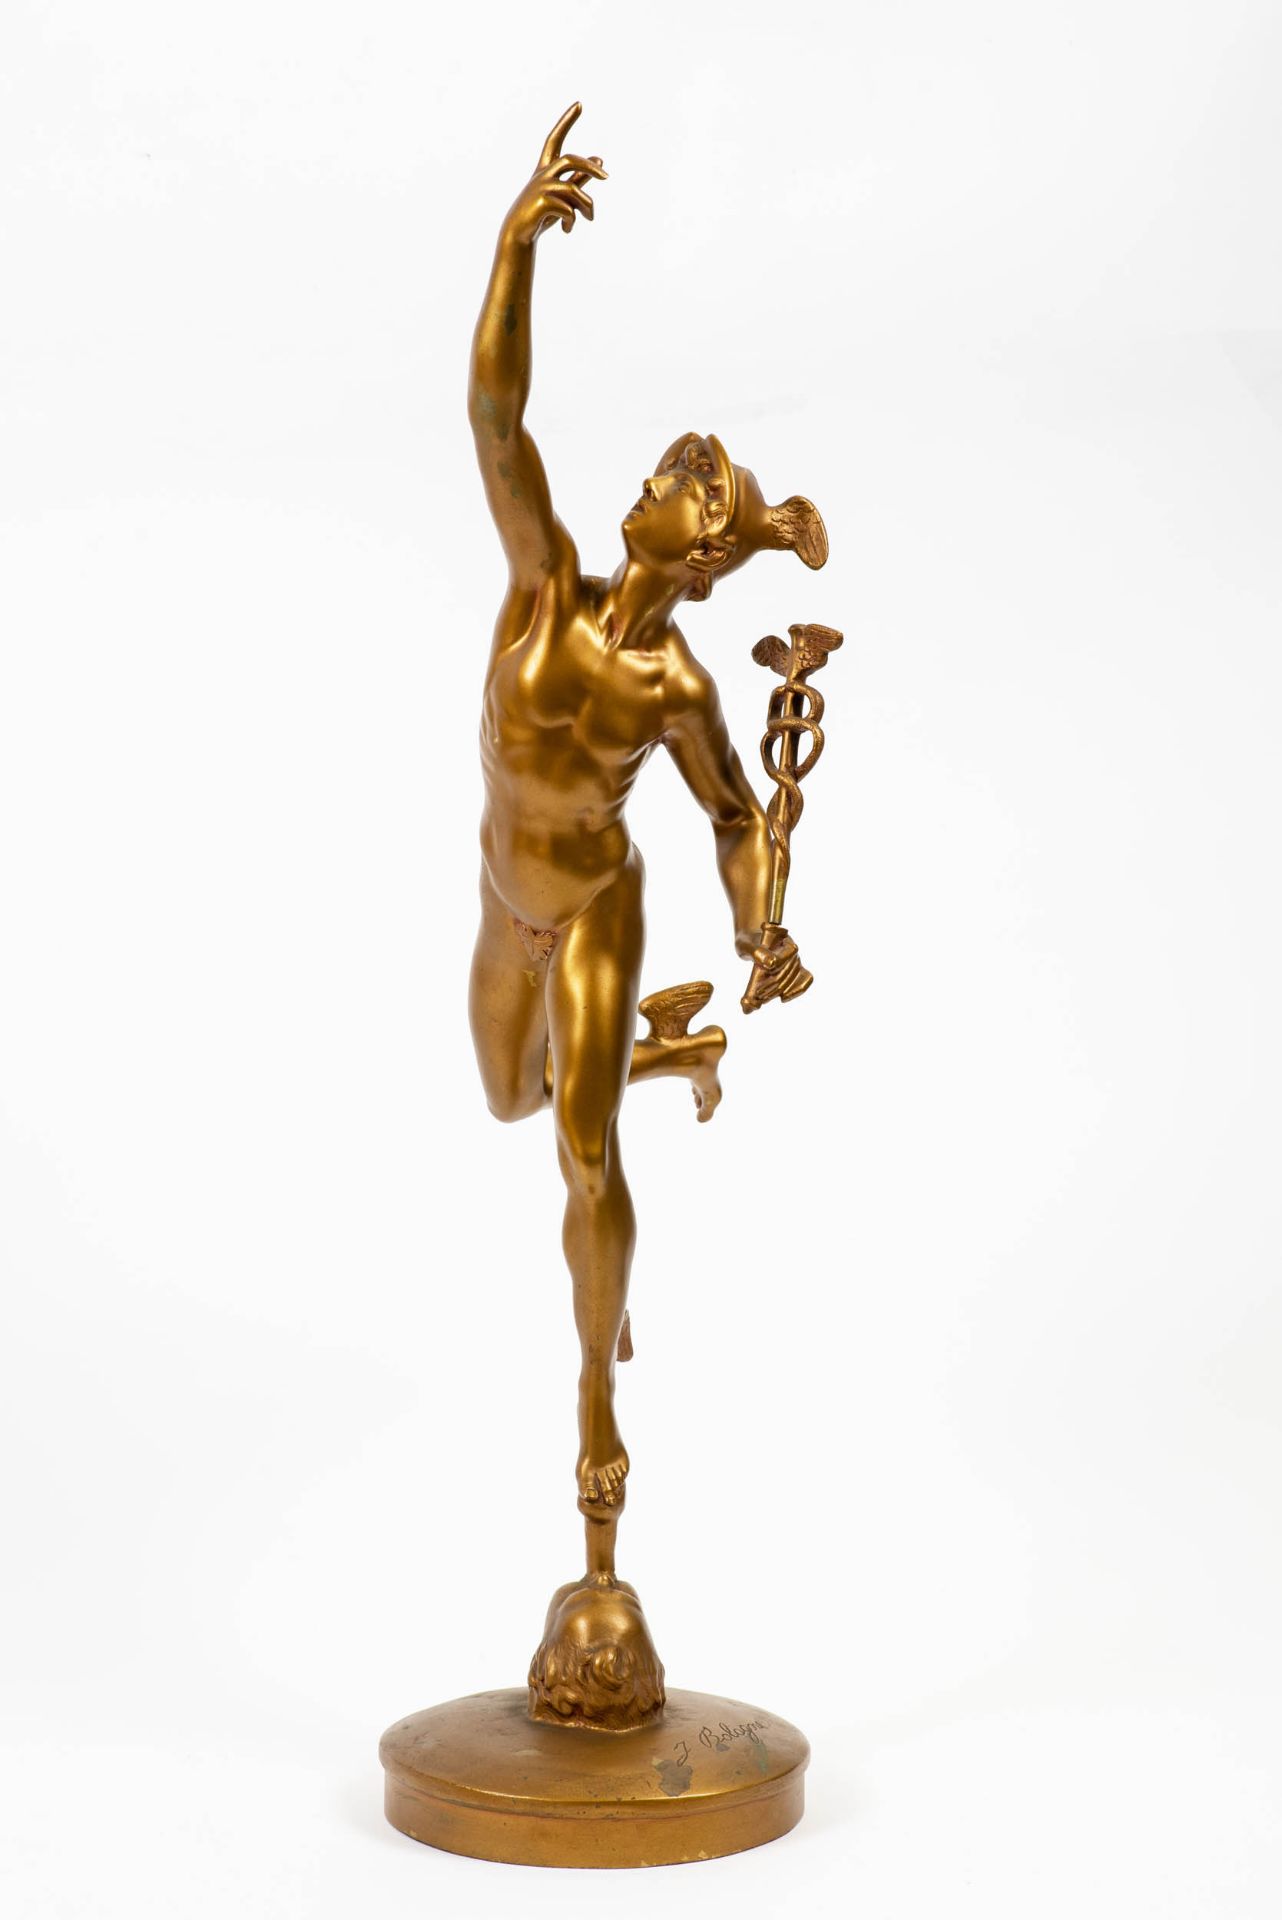 Nach Jean Boulogne (1529 Douai - 1608 Florenz)Hermes, Bronze, vergoldet, Höhe 60 cm, an der